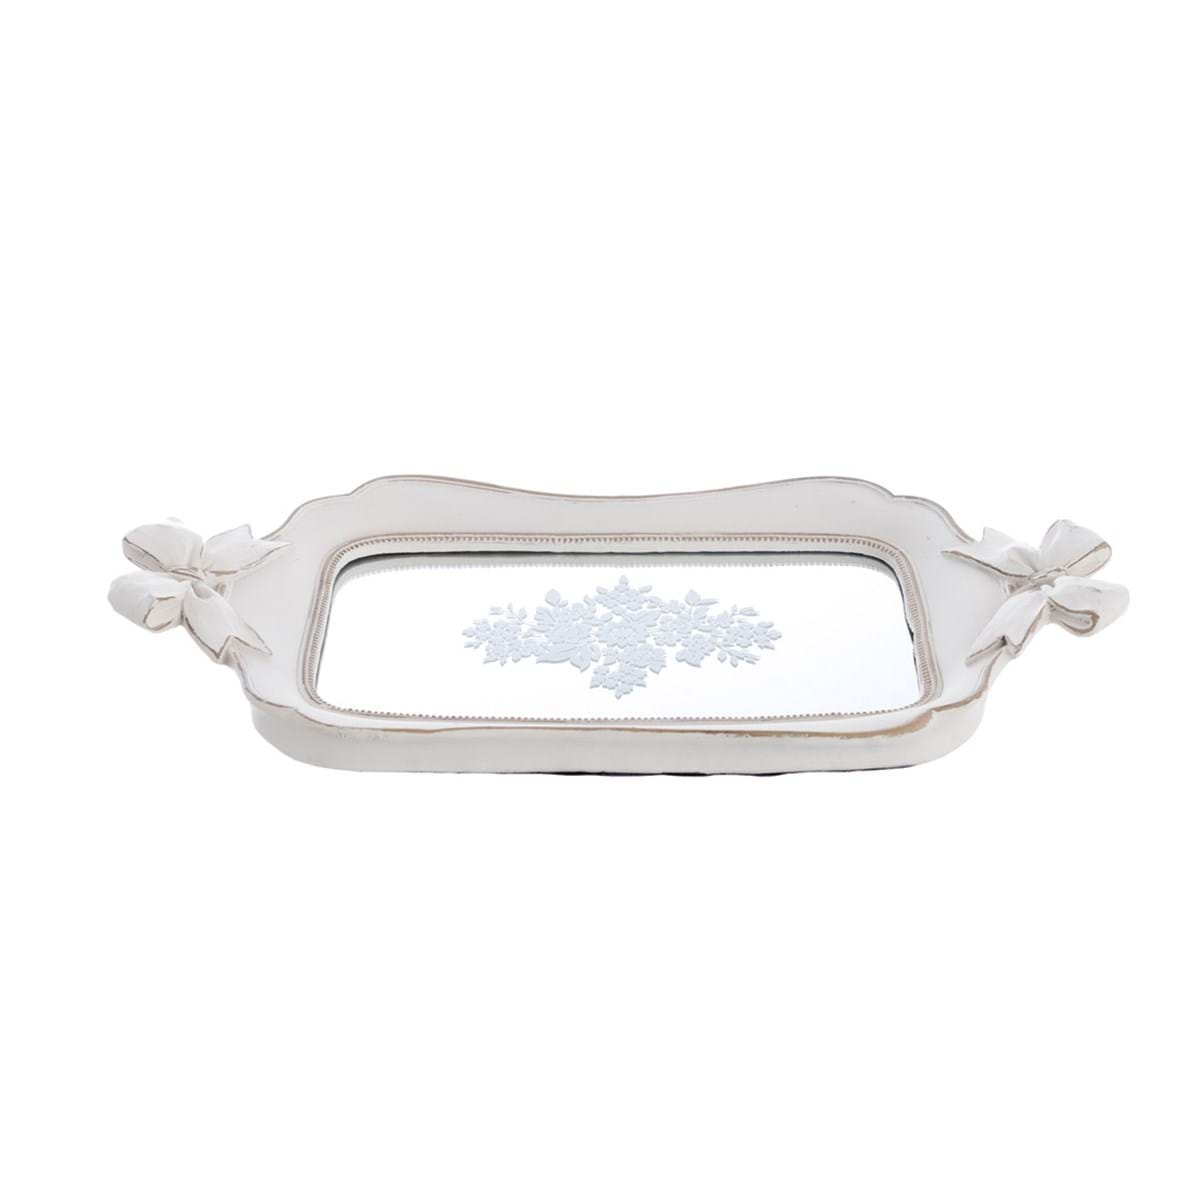 Vassoio specchiato con fiocchi in resina - 39x21 cm - Blanc Mariclò